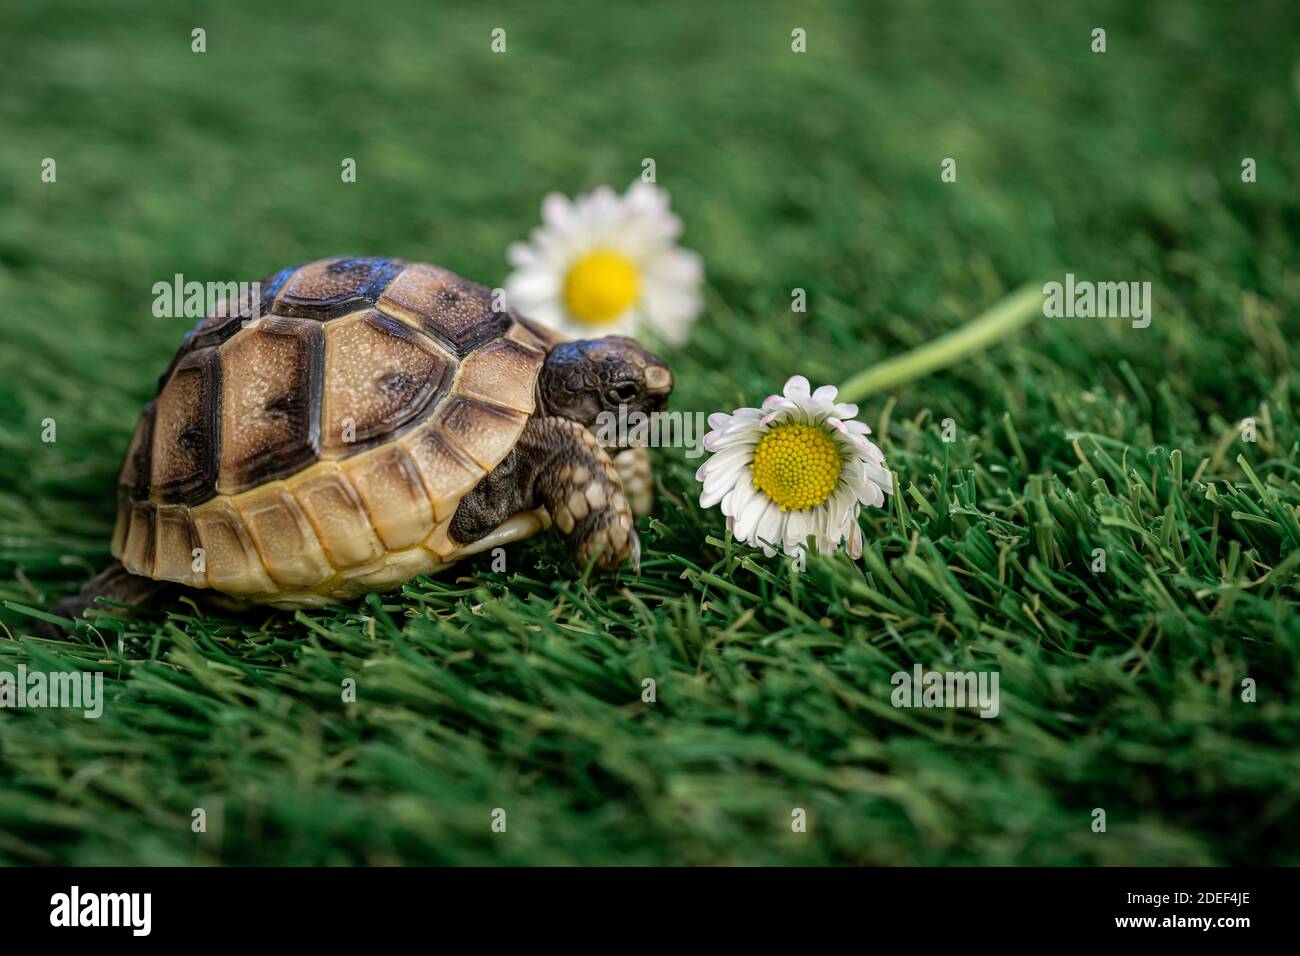 Gros plan d'une jeune tortue hermann isolée sur une herbe synthétique à fleur de pâquerette - macro, mise au point sélective, espace pour le texte Banque D'Images